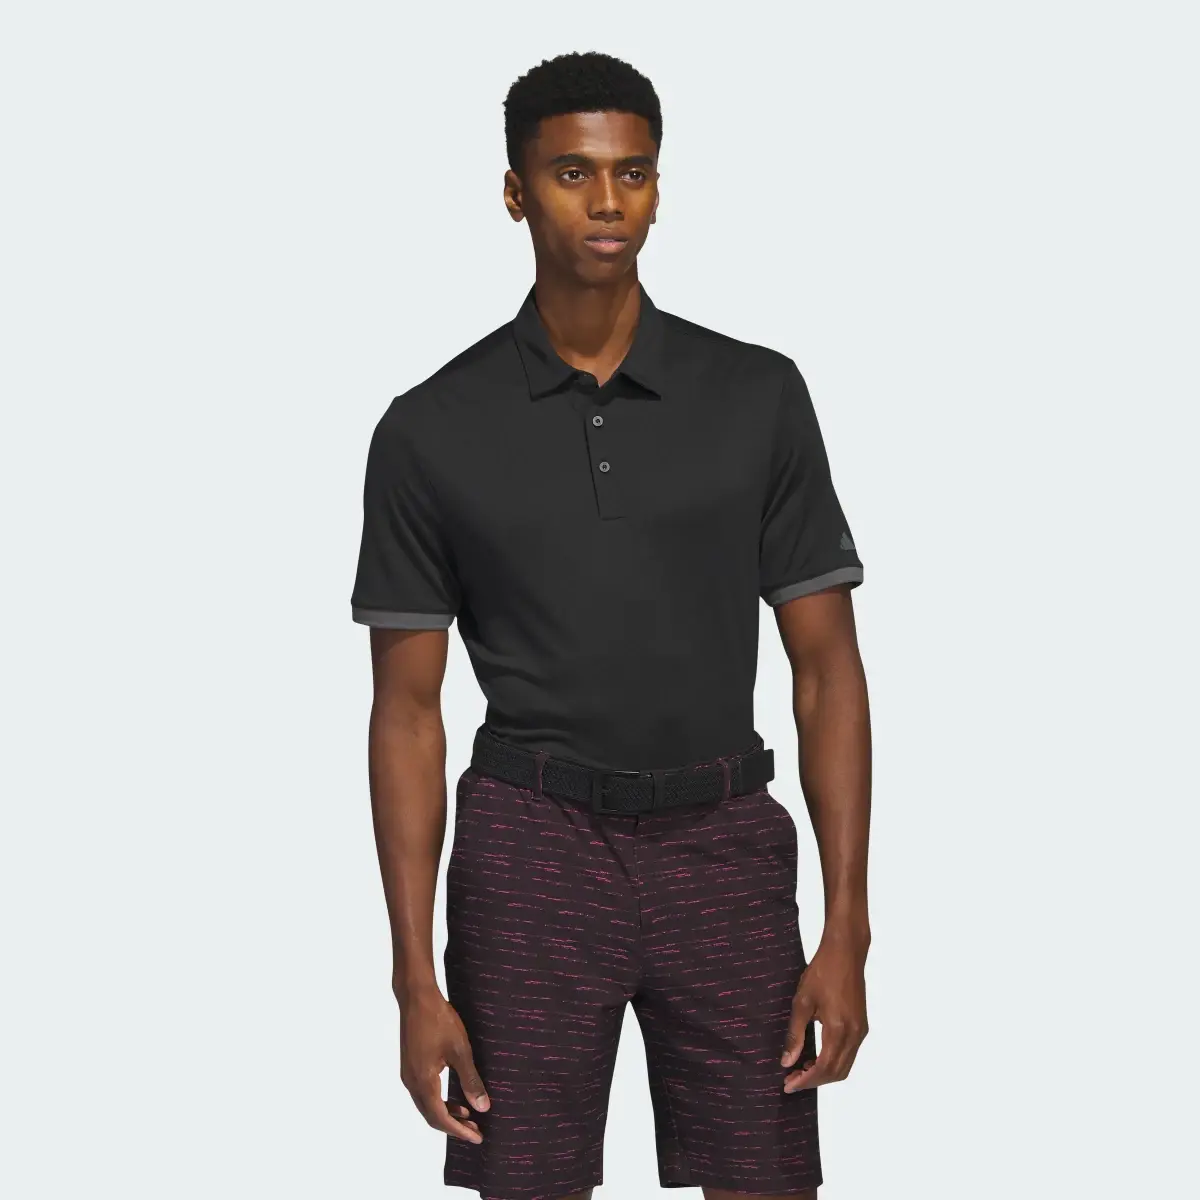 Adidas HEAT.RDY Golf Polo Shirt. 2